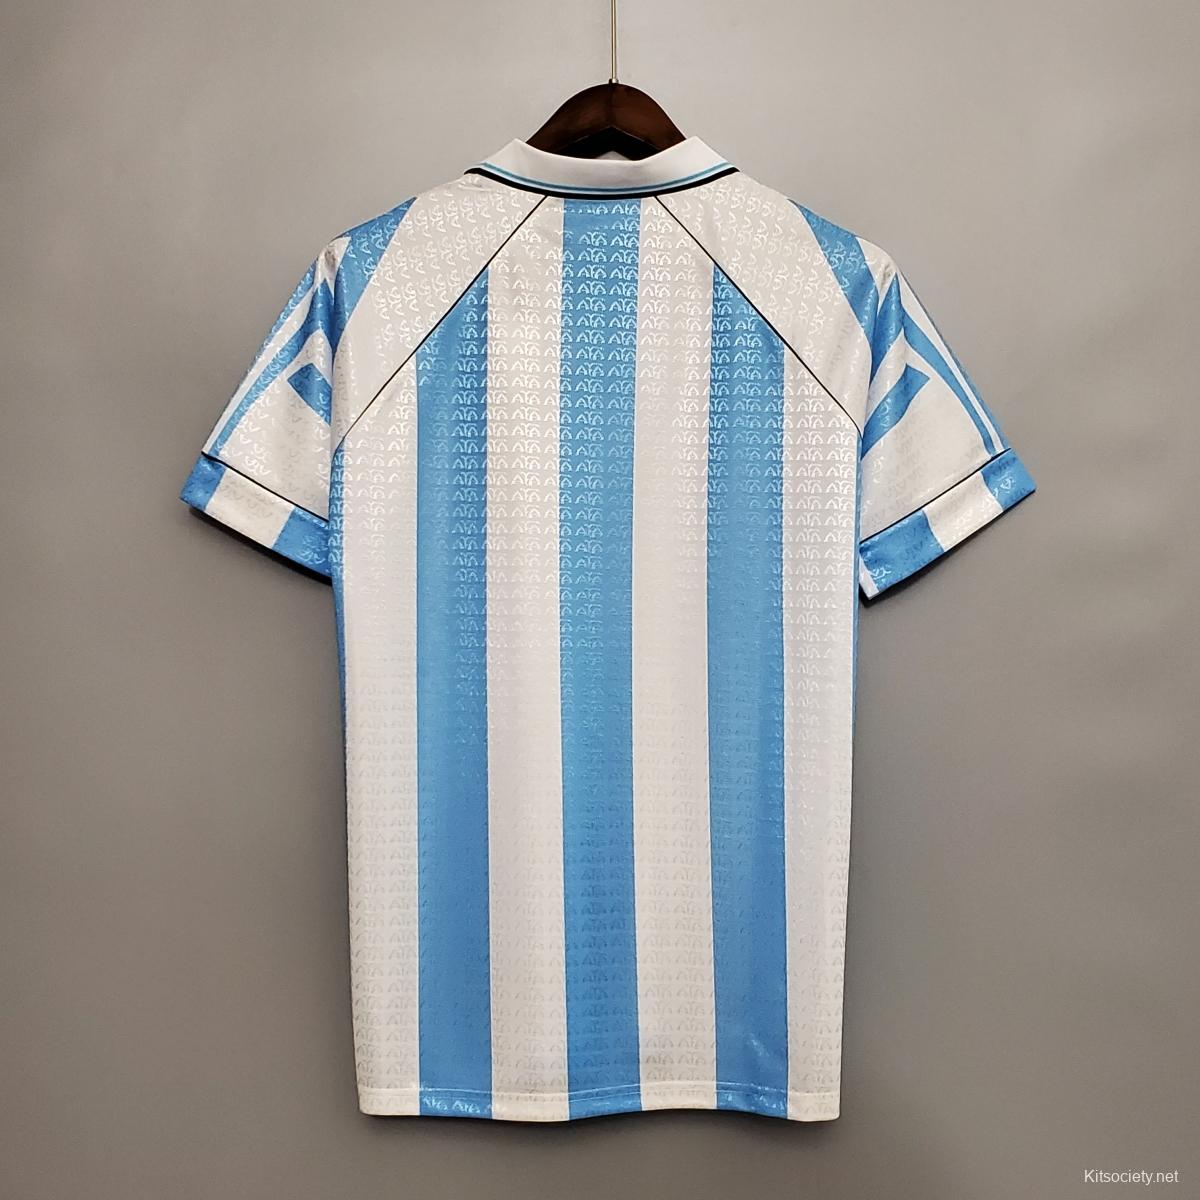 Argentina retro soccer kits